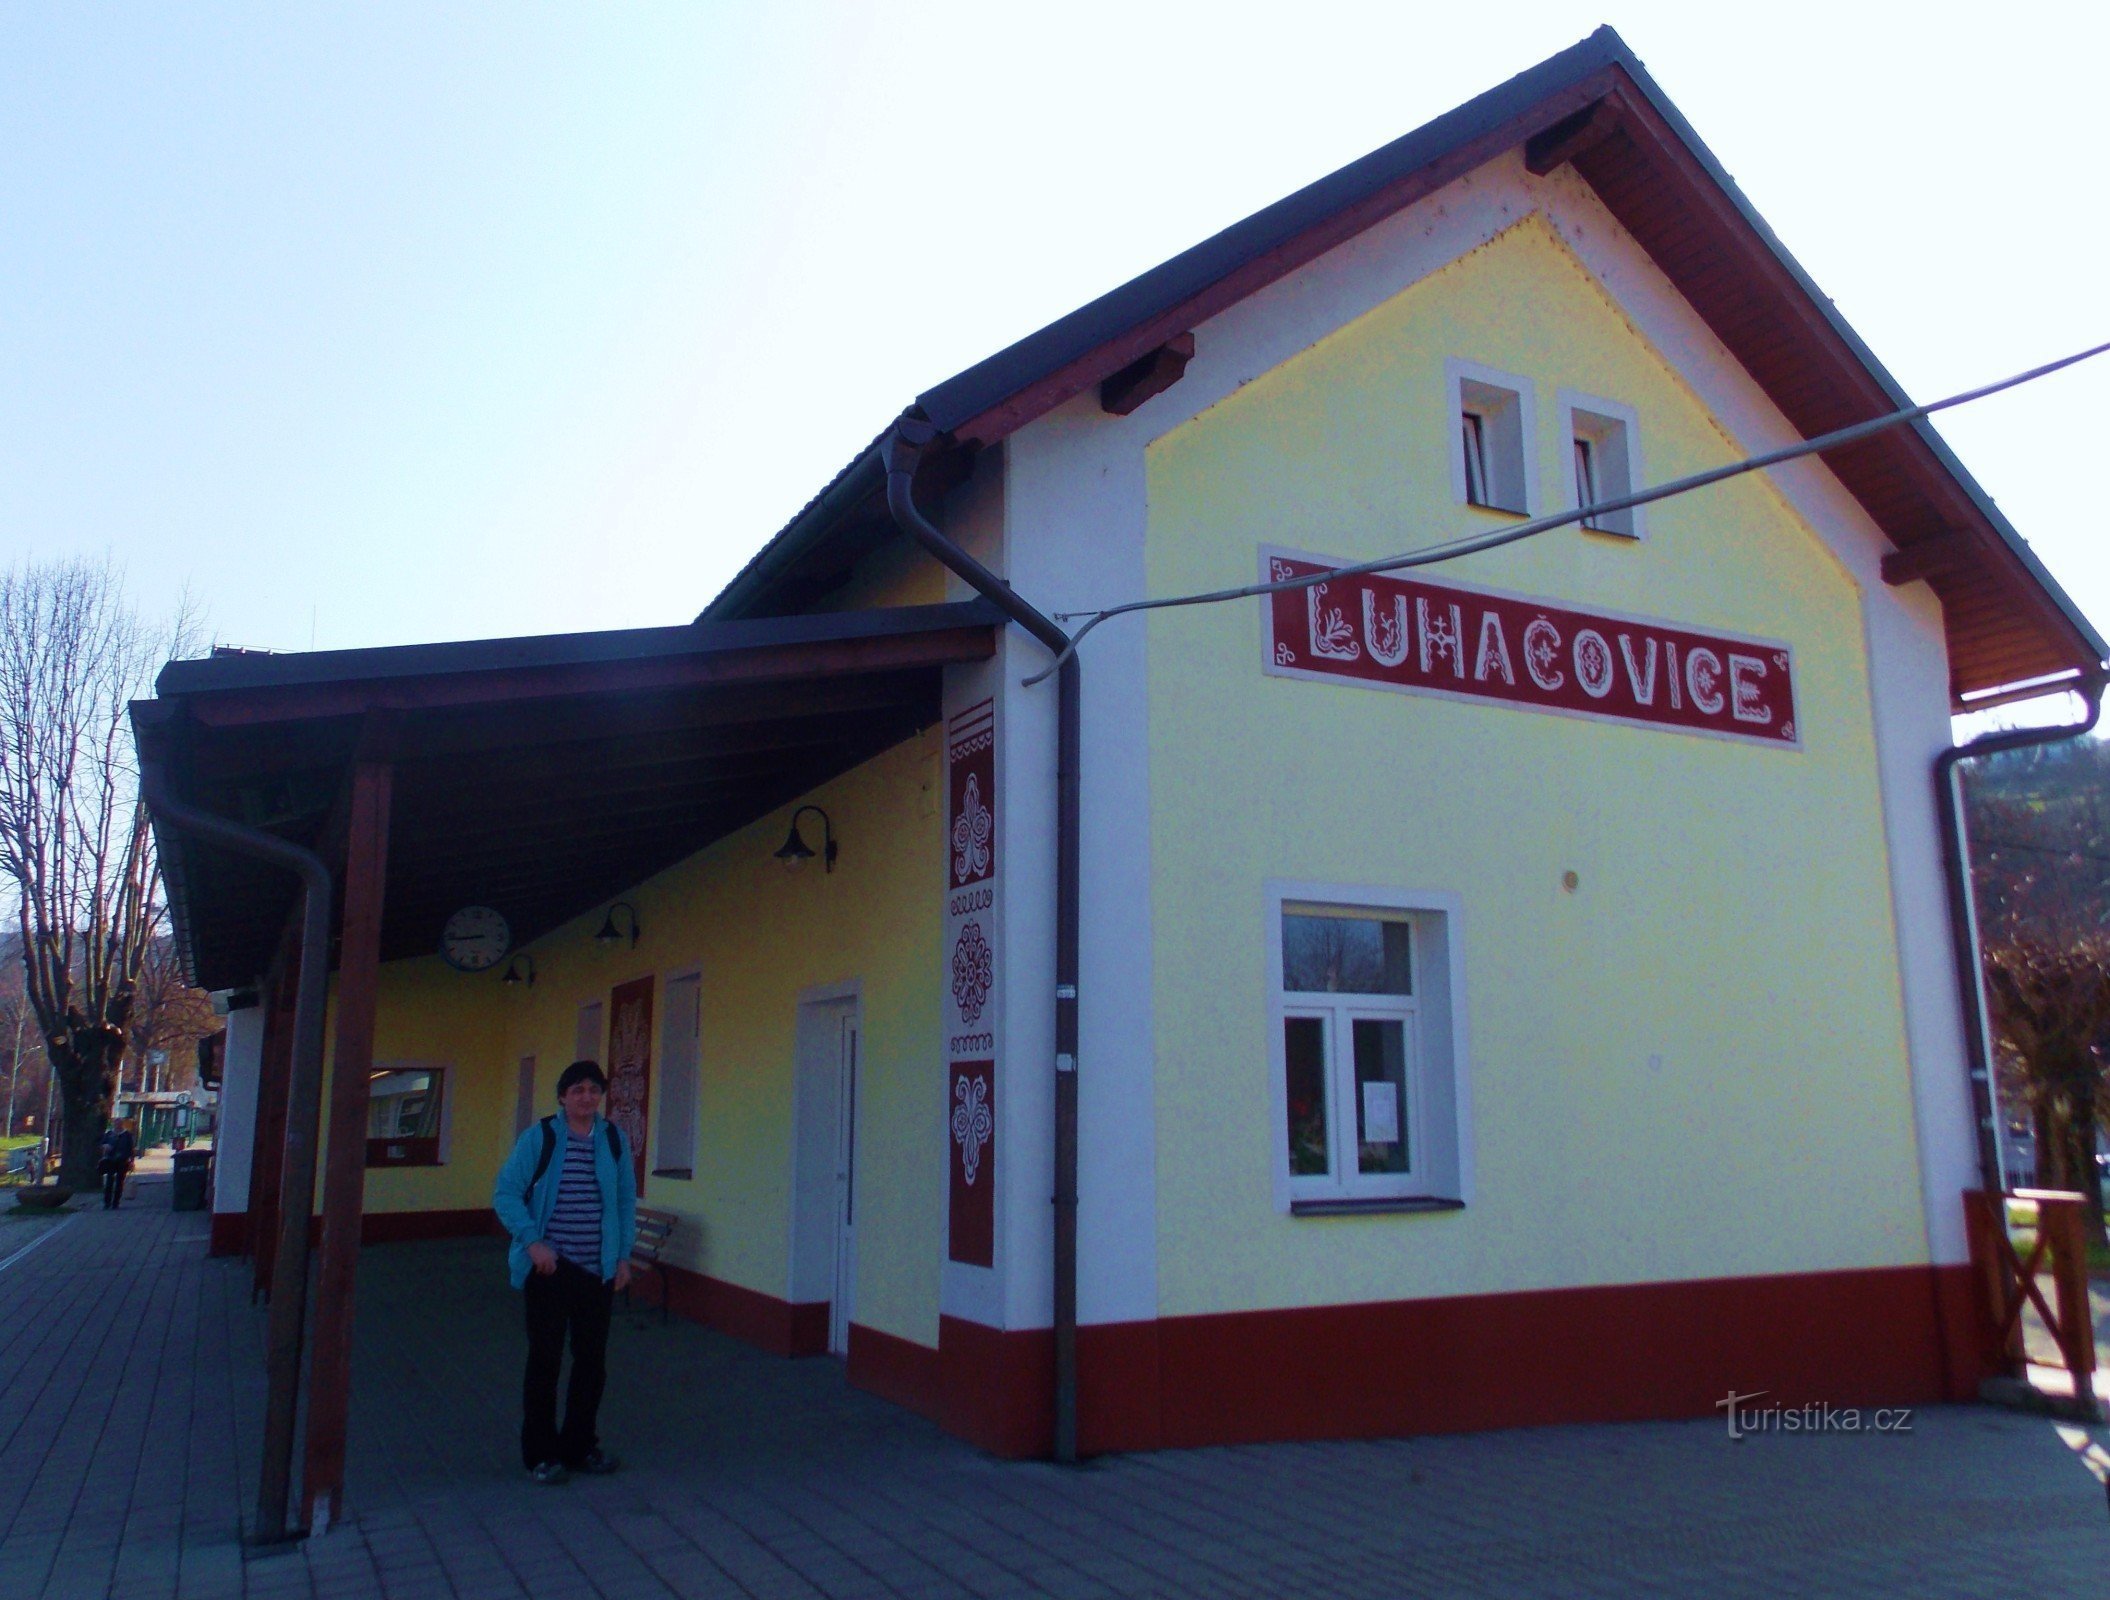 A estação de trem em Luhačovice